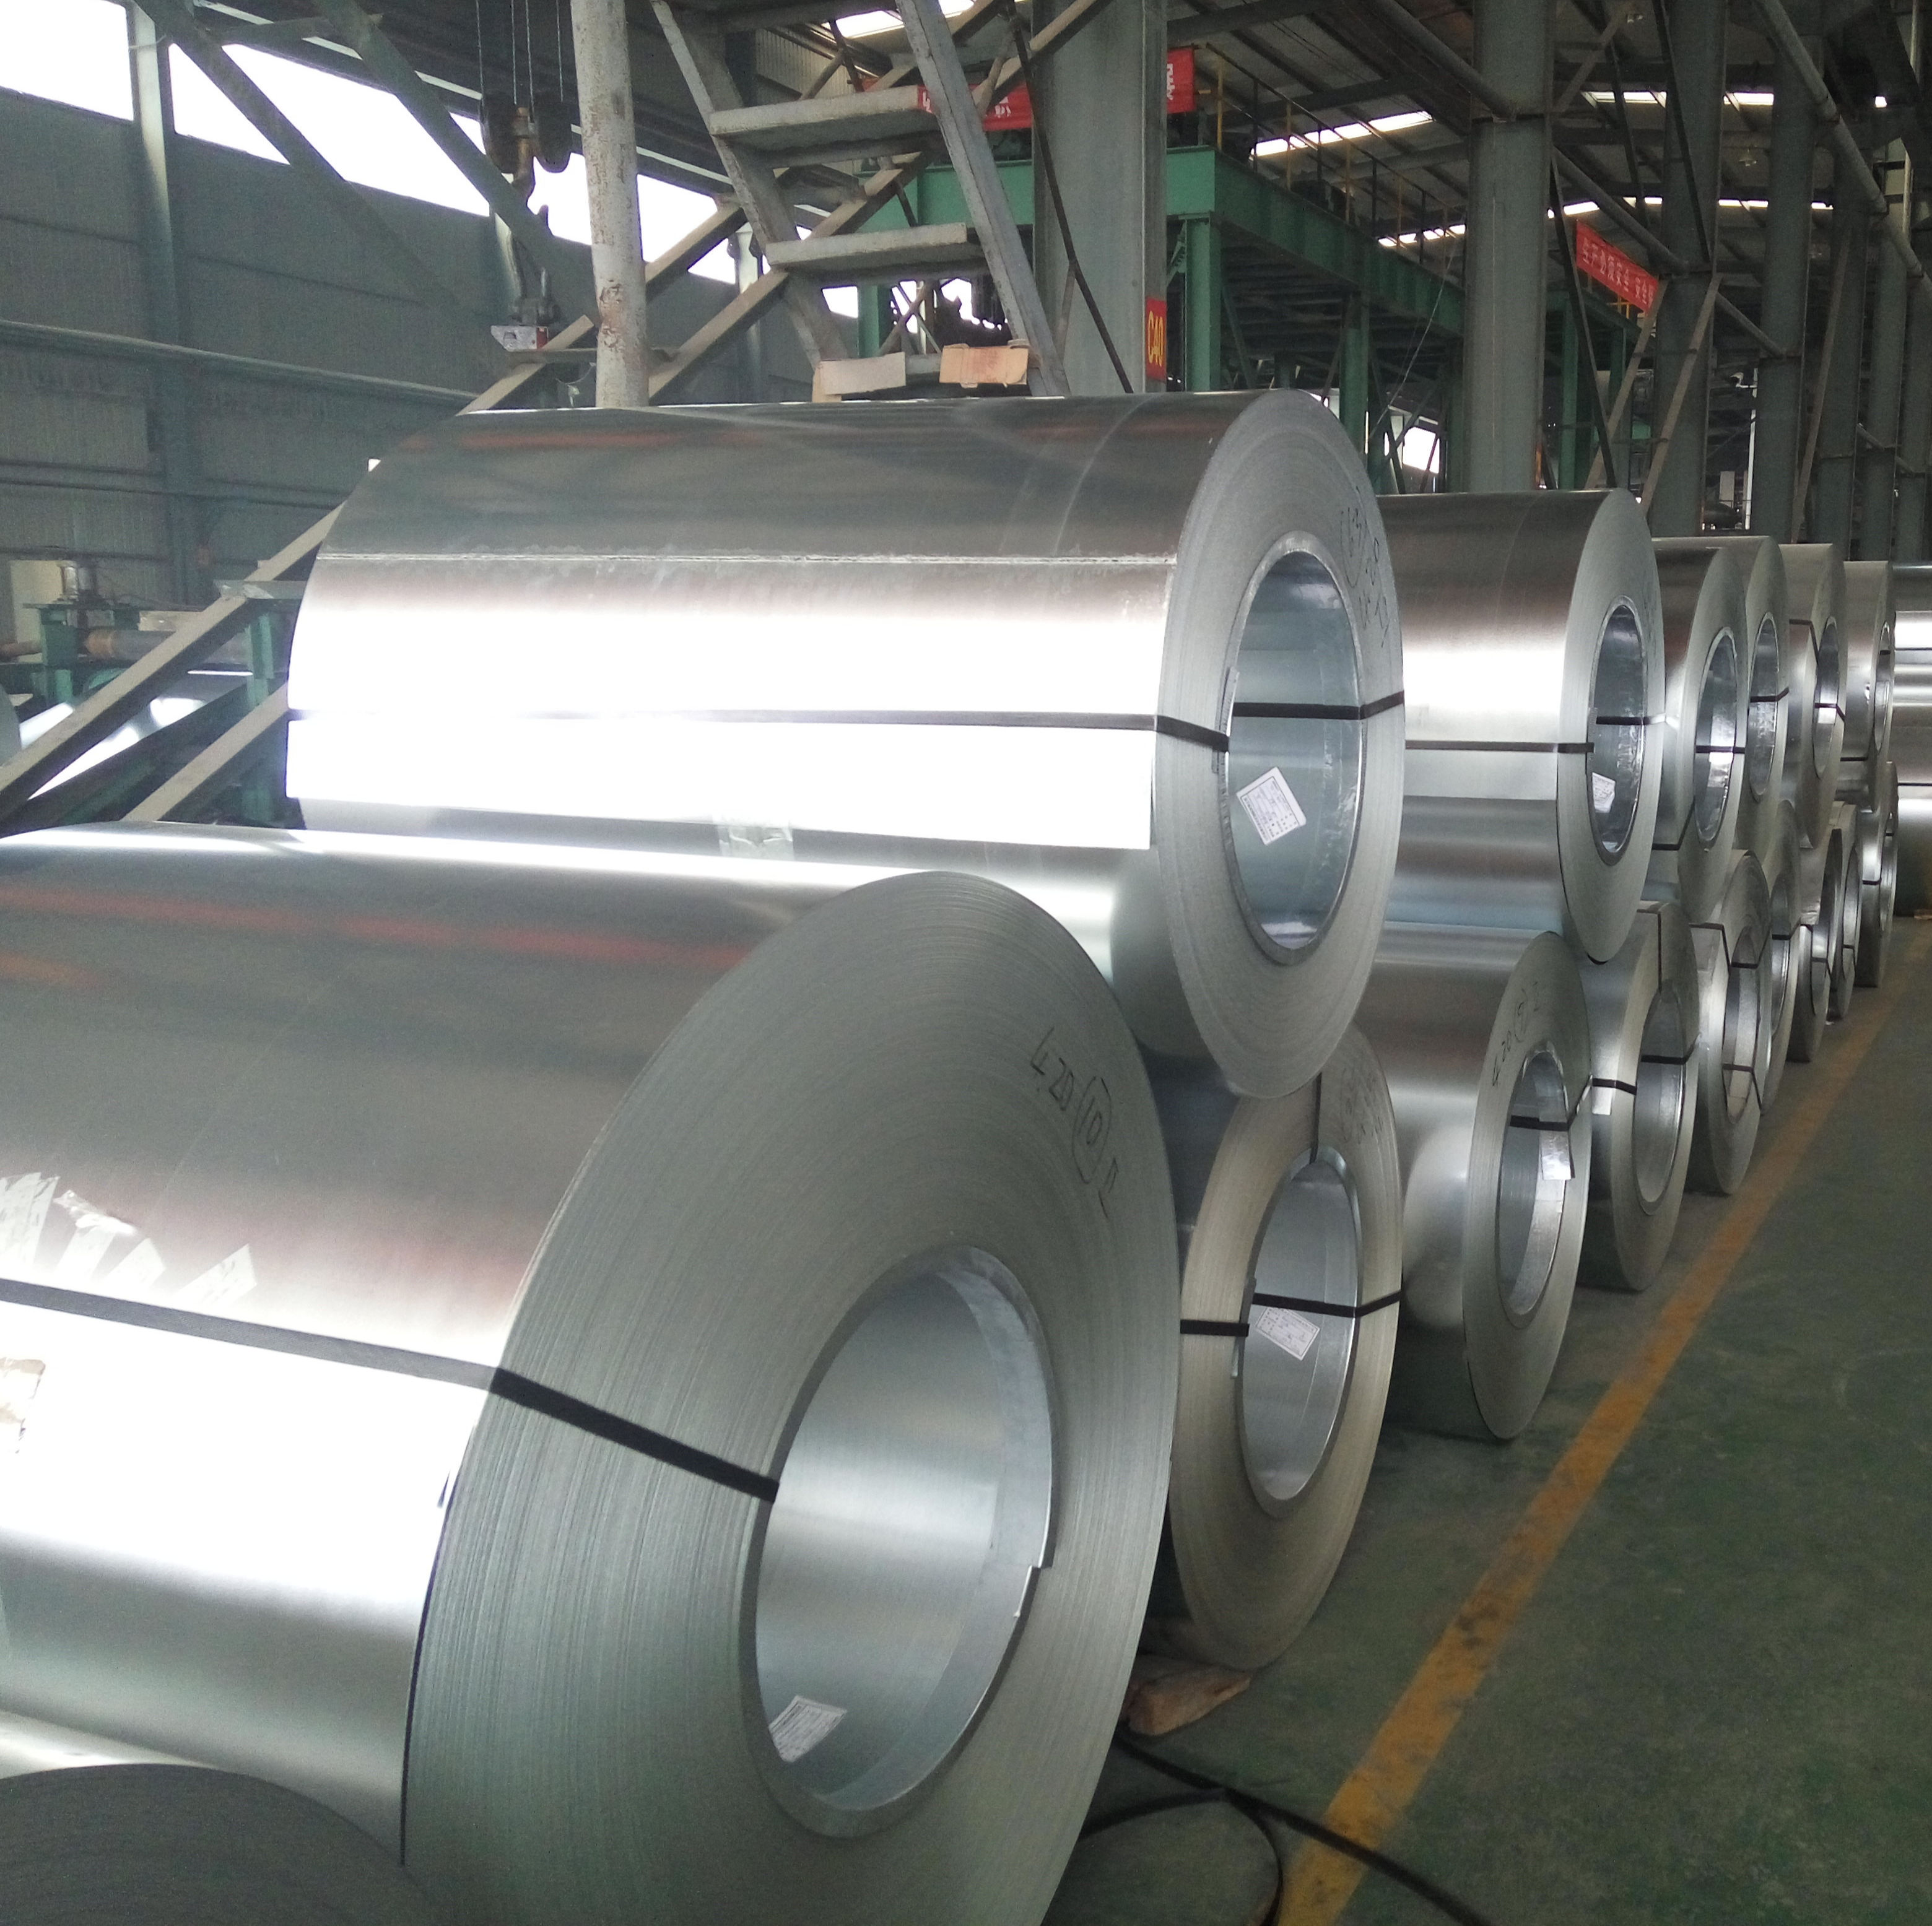 Шаньдун Кунганг металл технологияләре, LtdЧ Ltd көчәйтелгән саклау өчен гальванизацияләнгән кәтүкләр кертә